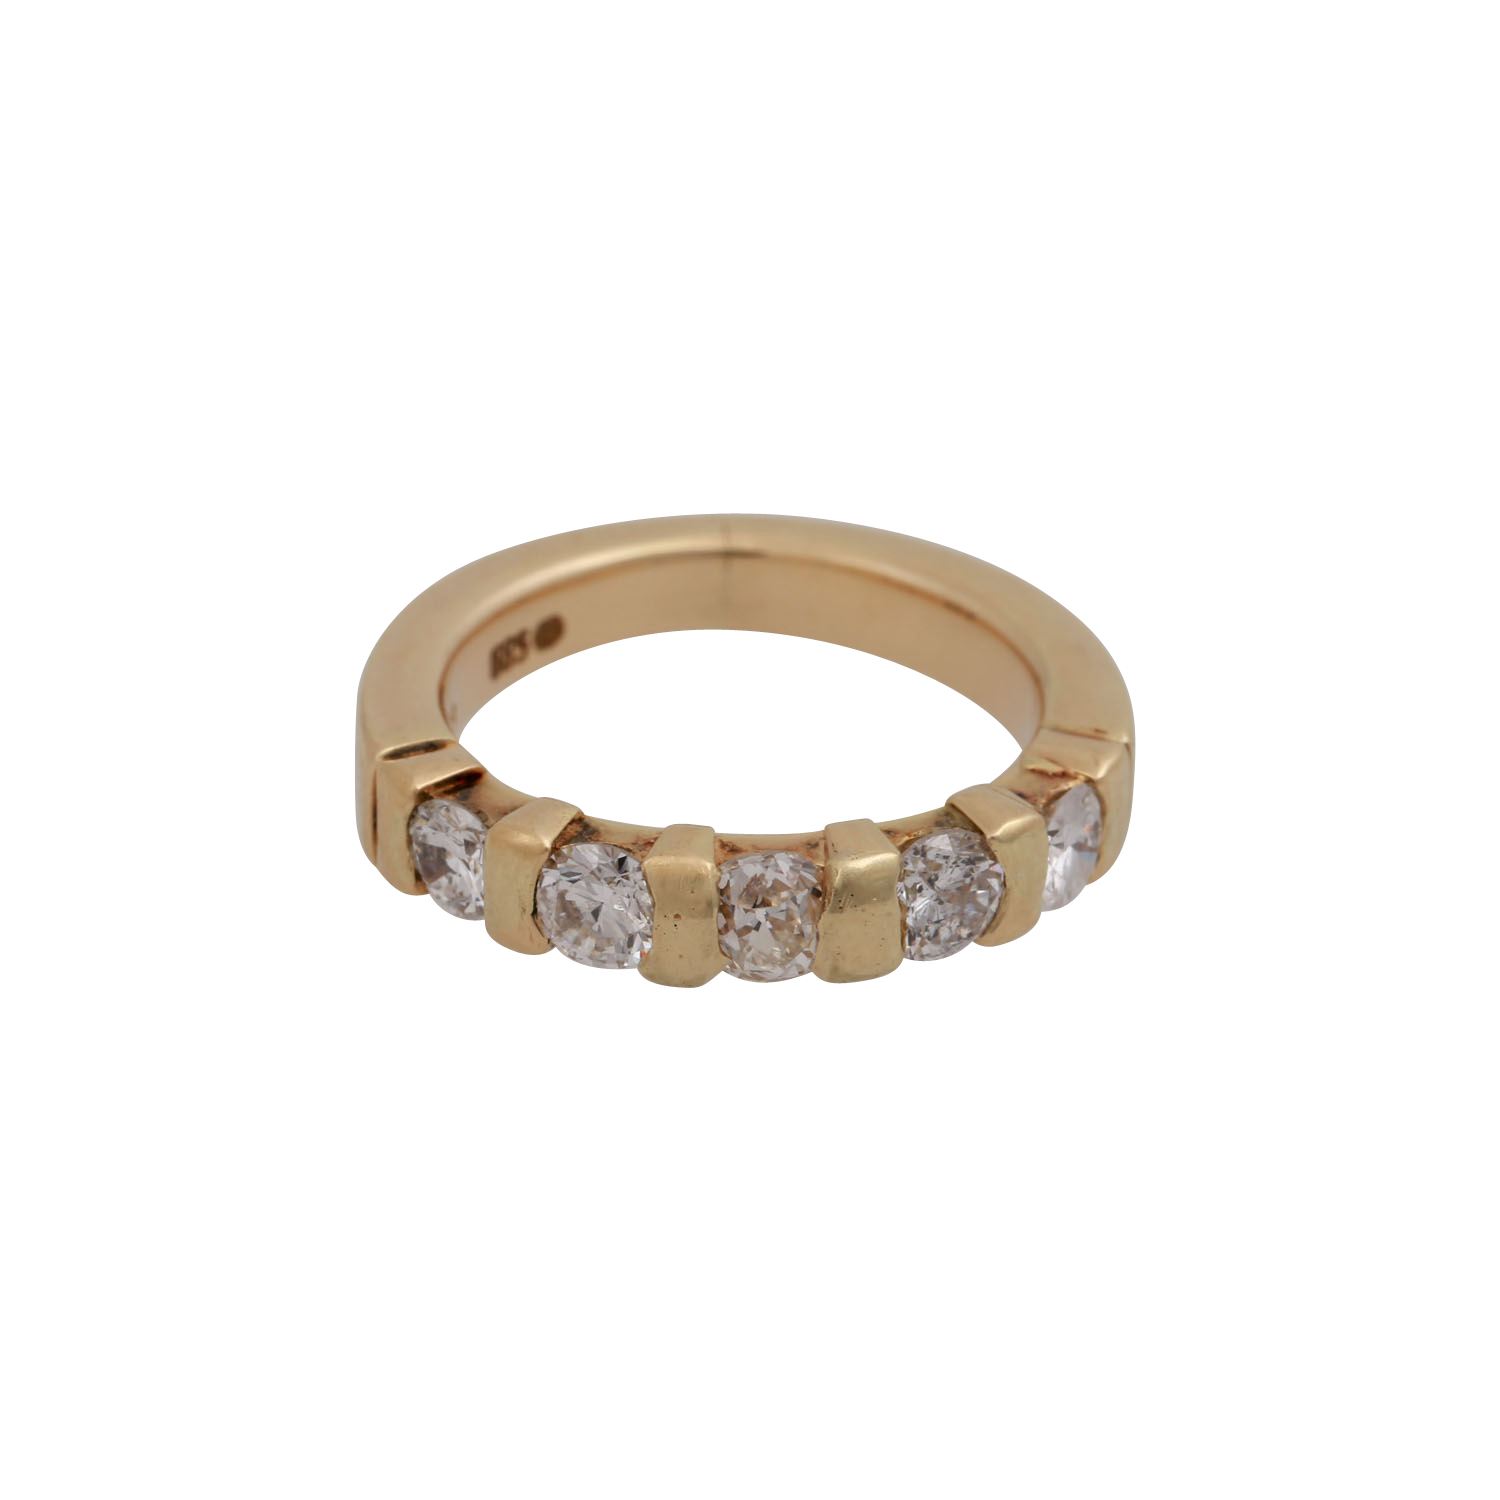 PFANDAUKTION - 1 HAU Tissot 1853 PR 100 Quartz Datum Stahl,1 Ring Brillanten Gold 585 (585 gr.);1 - Image 5 of 5